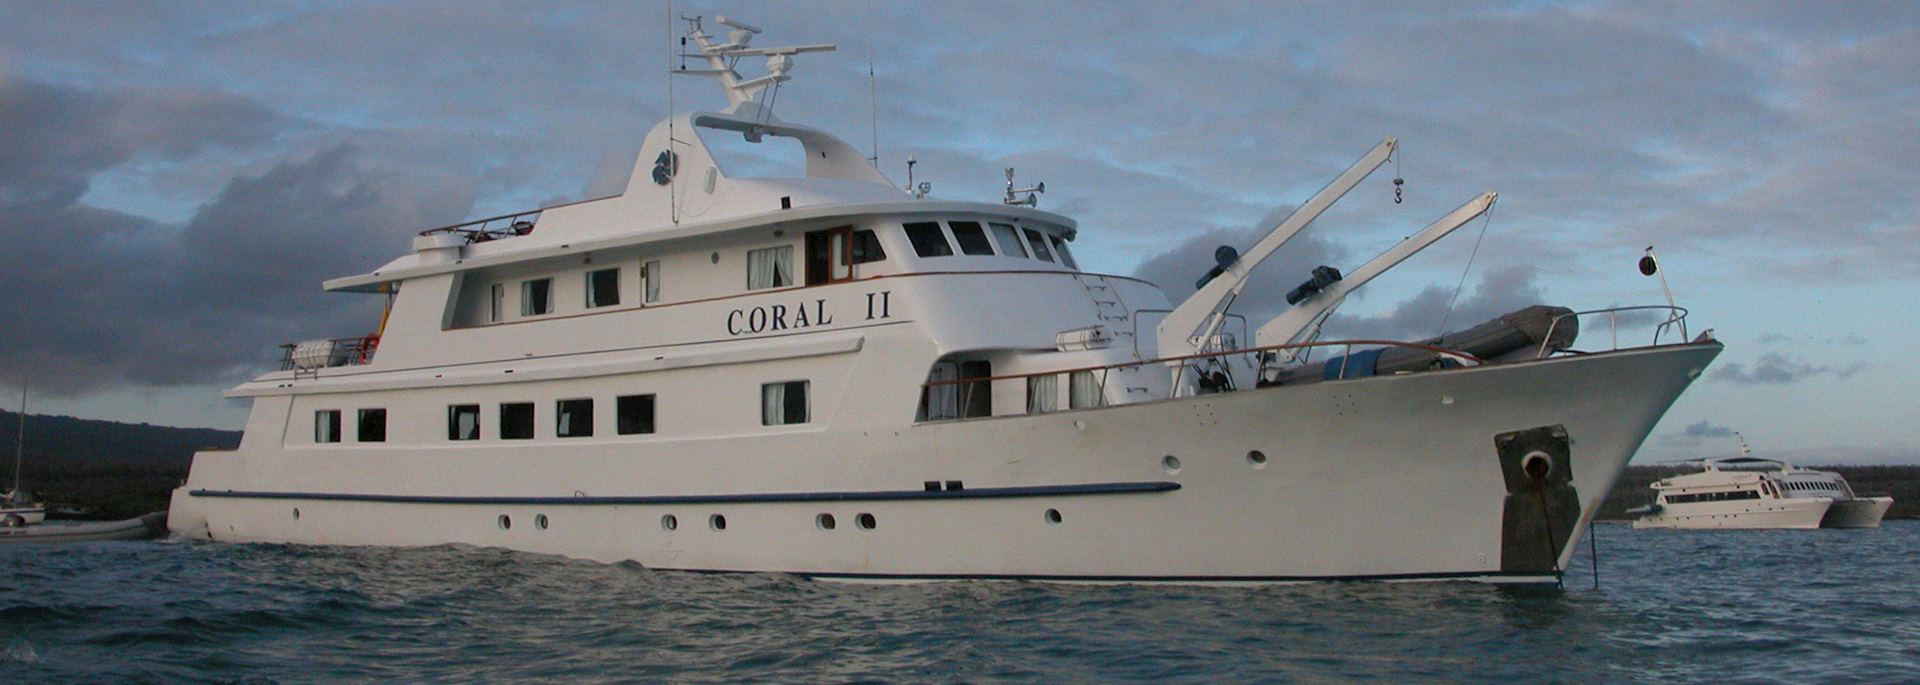 Coral II